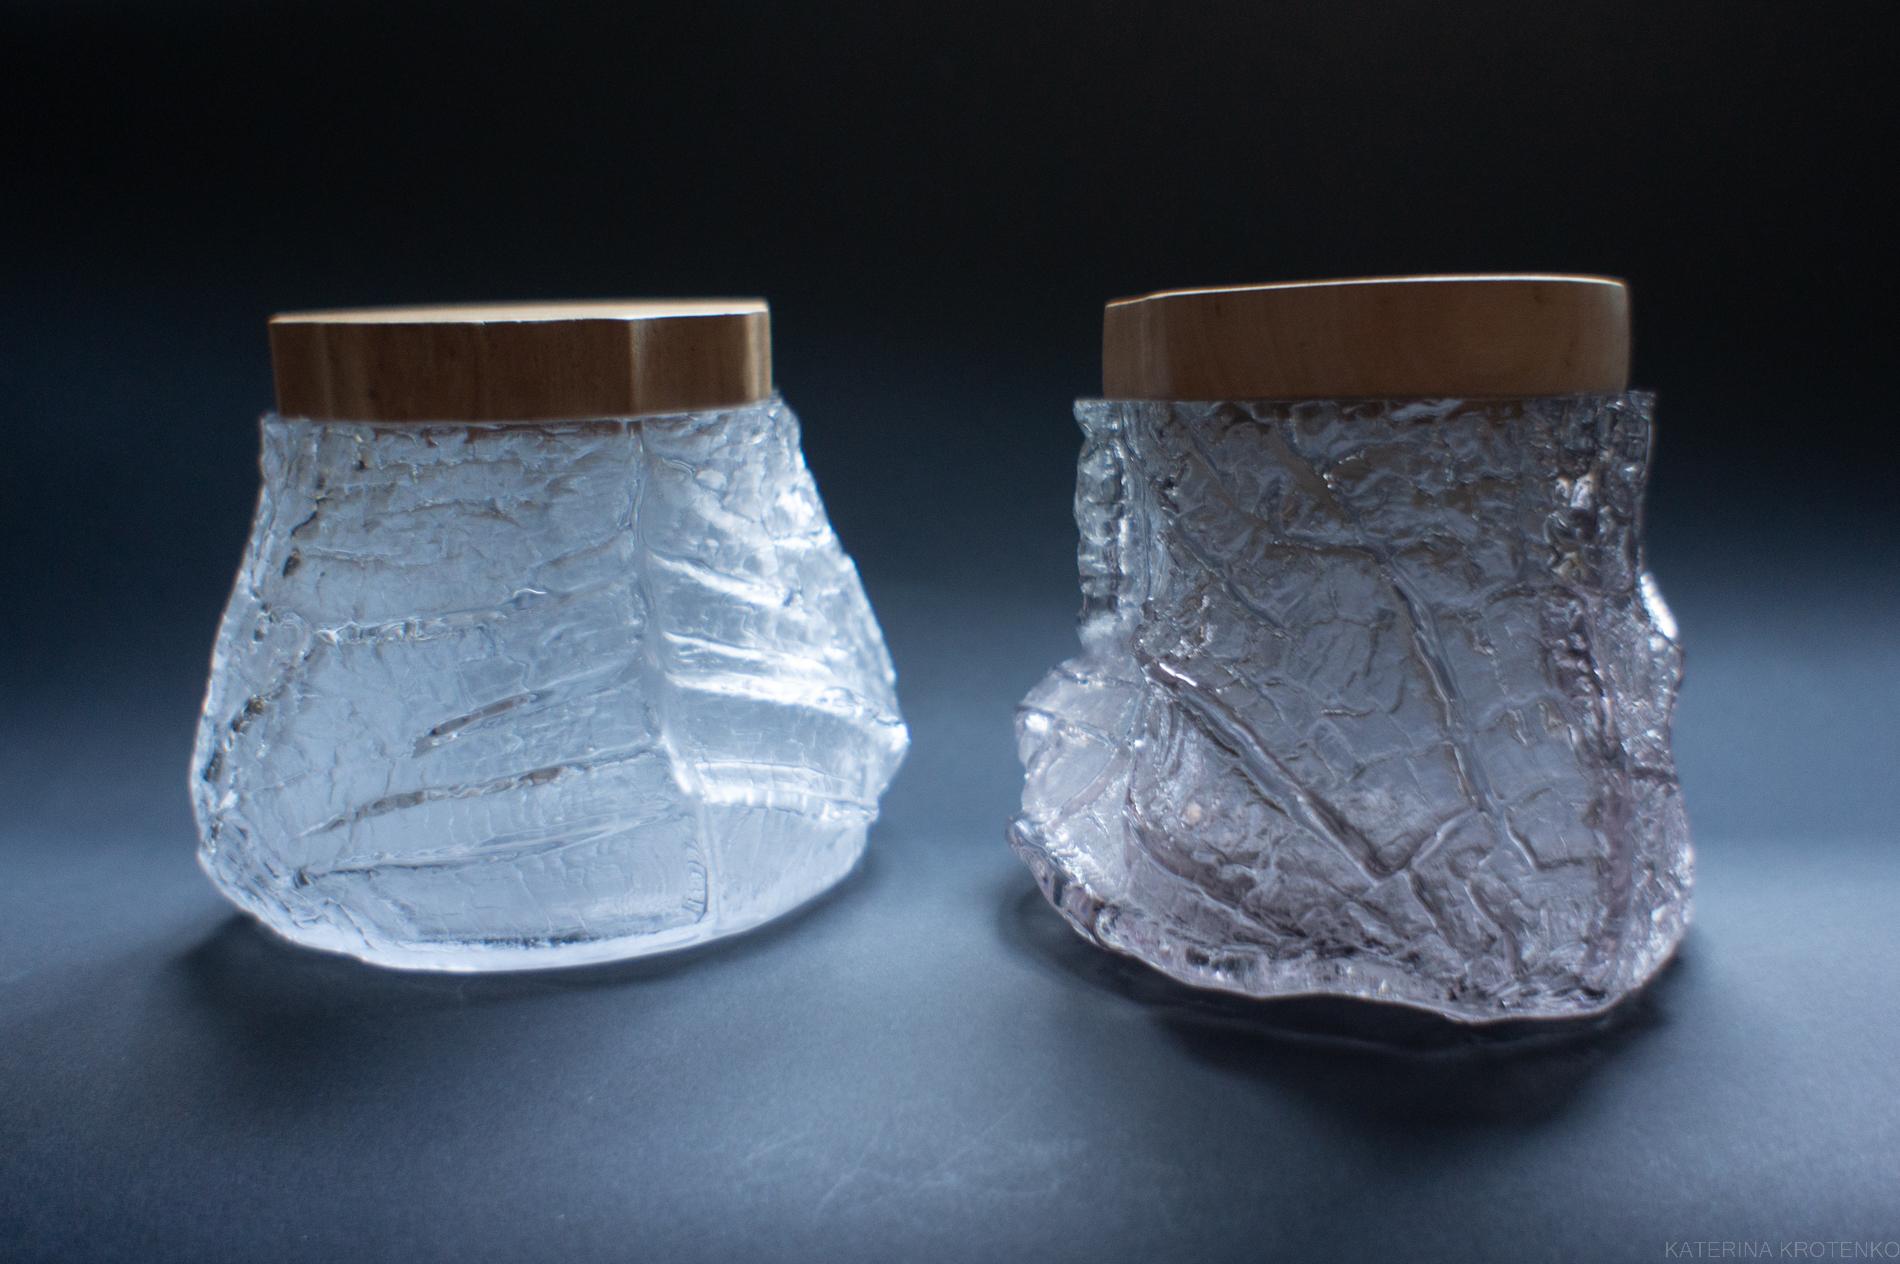 Glasschatzkammer, Band IX Nr. 13, rauchgrau mit Holzdeckel

Drago ist eine skulpturale Glasware, die das Konzept einer Schatzkammer erforscht.  die Kraft eines Gefäßes, den Wert persönlich wertvoller natürlicher Bestandteile oder materieller